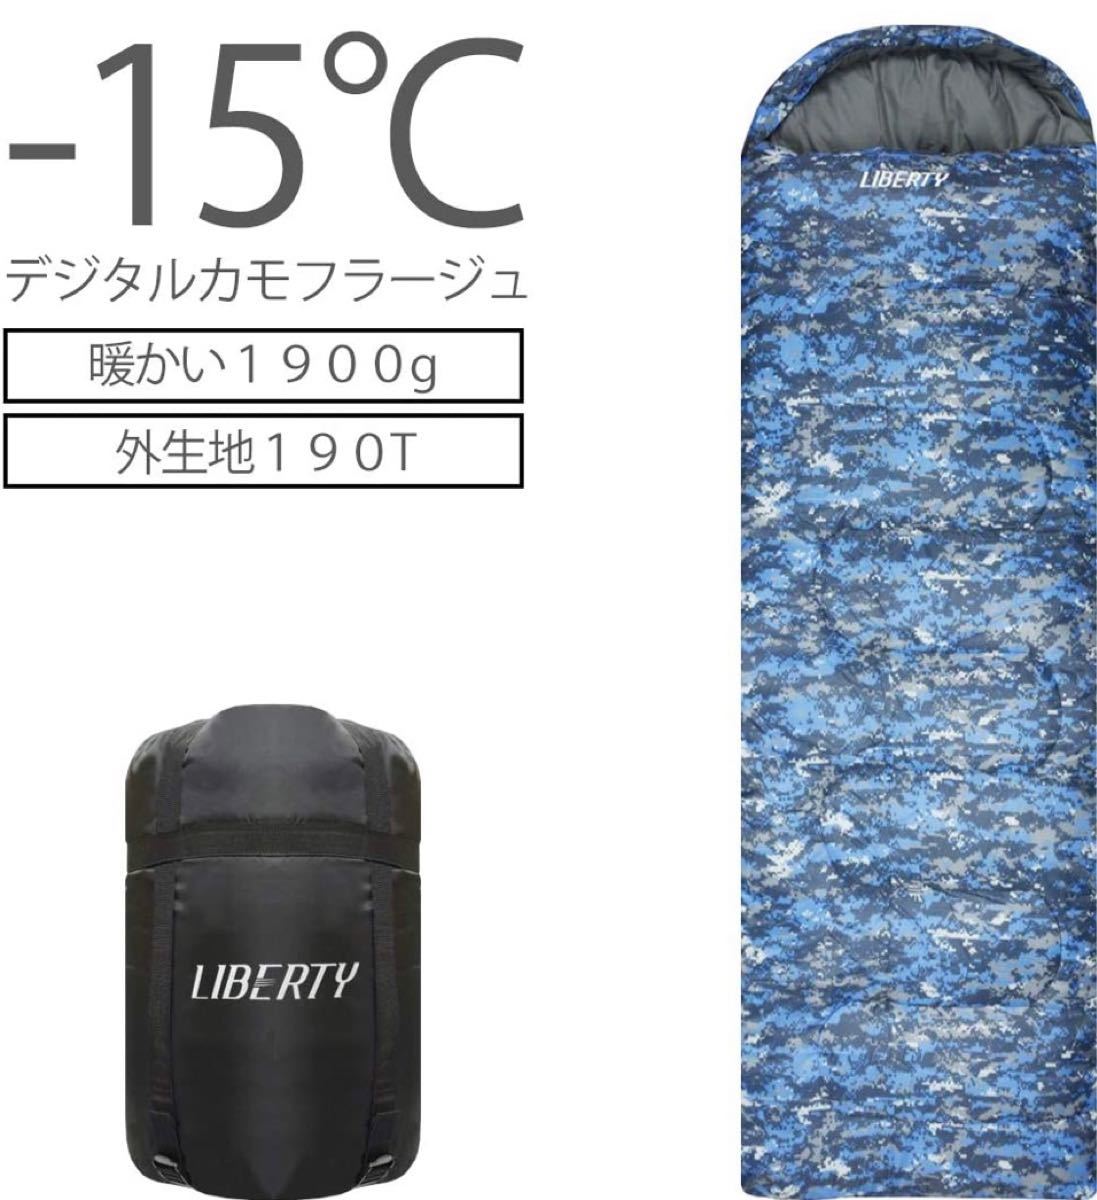 寝袋 シュラフ 封筒型 デジタル迷彩 コンパクト 車中泊 最低使用温度 -15℃ 青 ブルー